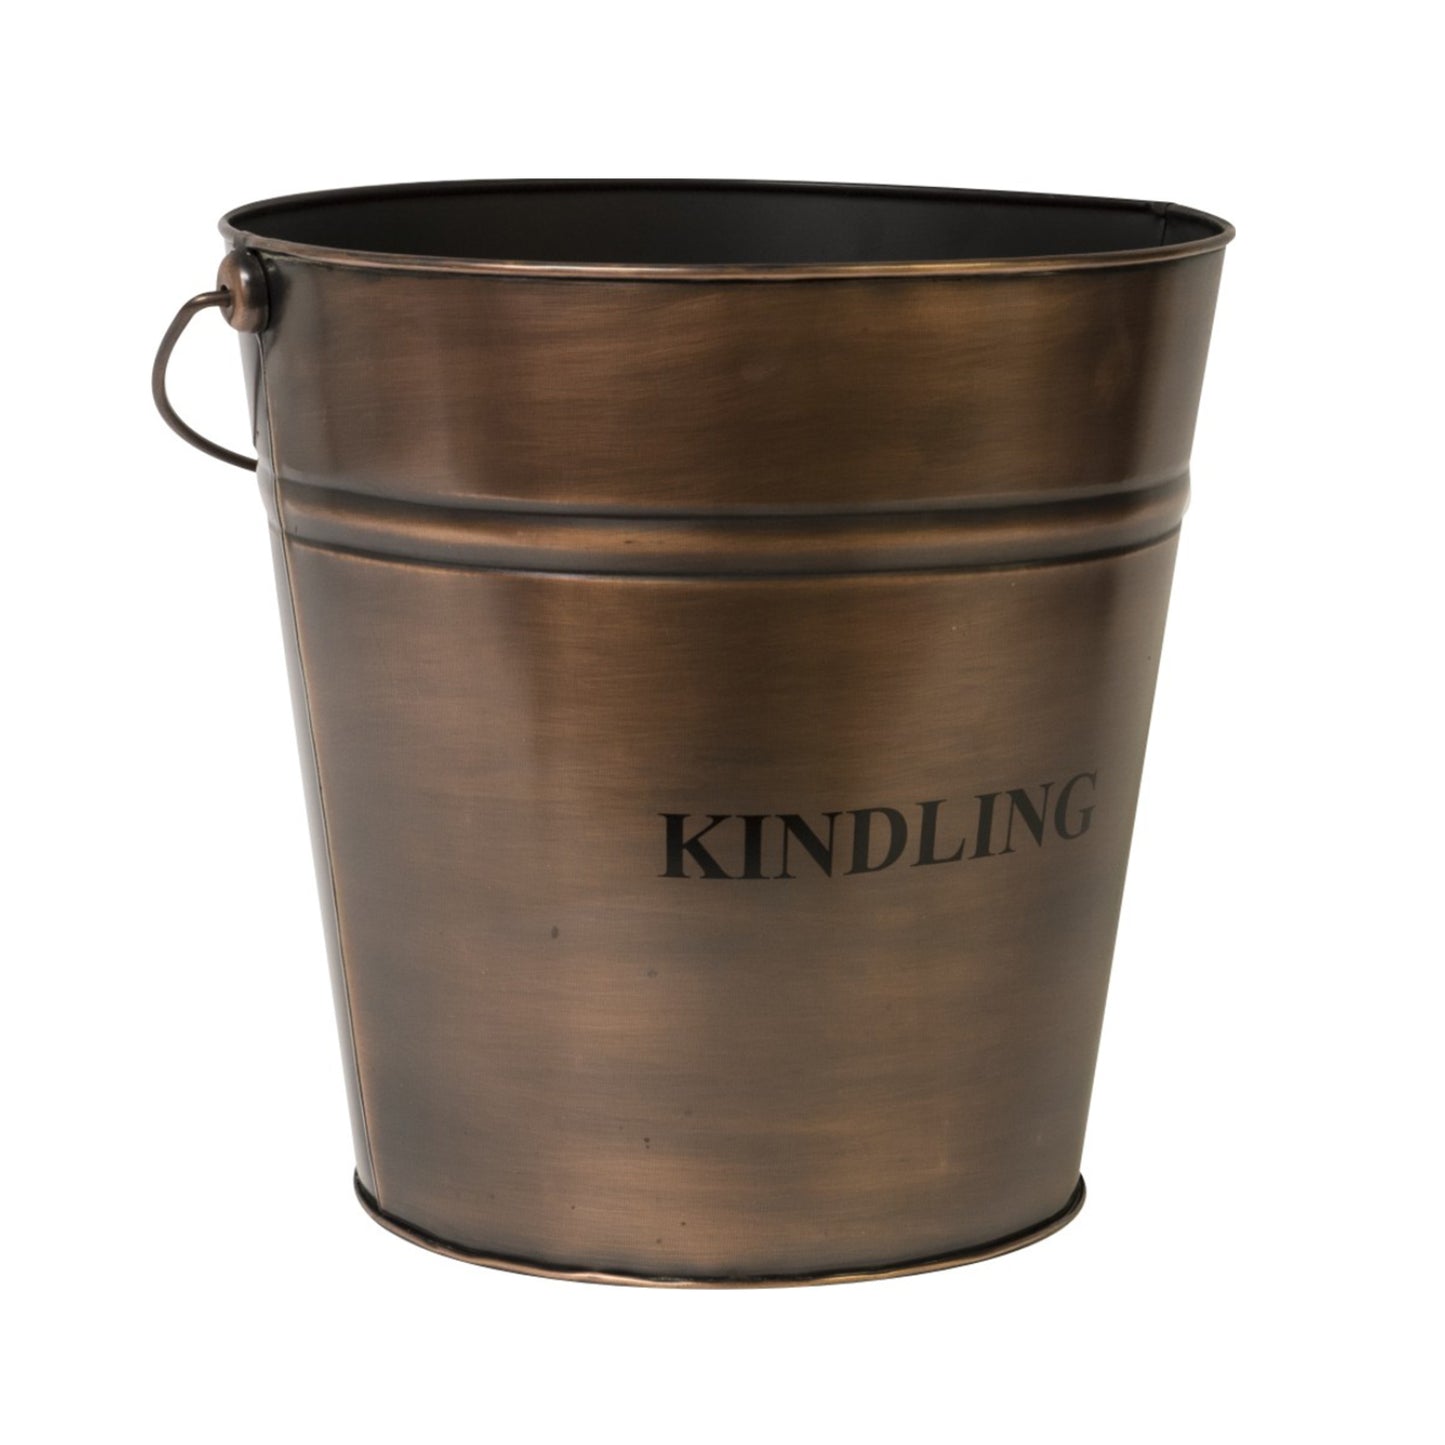 Kindling Copper Bucket by Ivyline